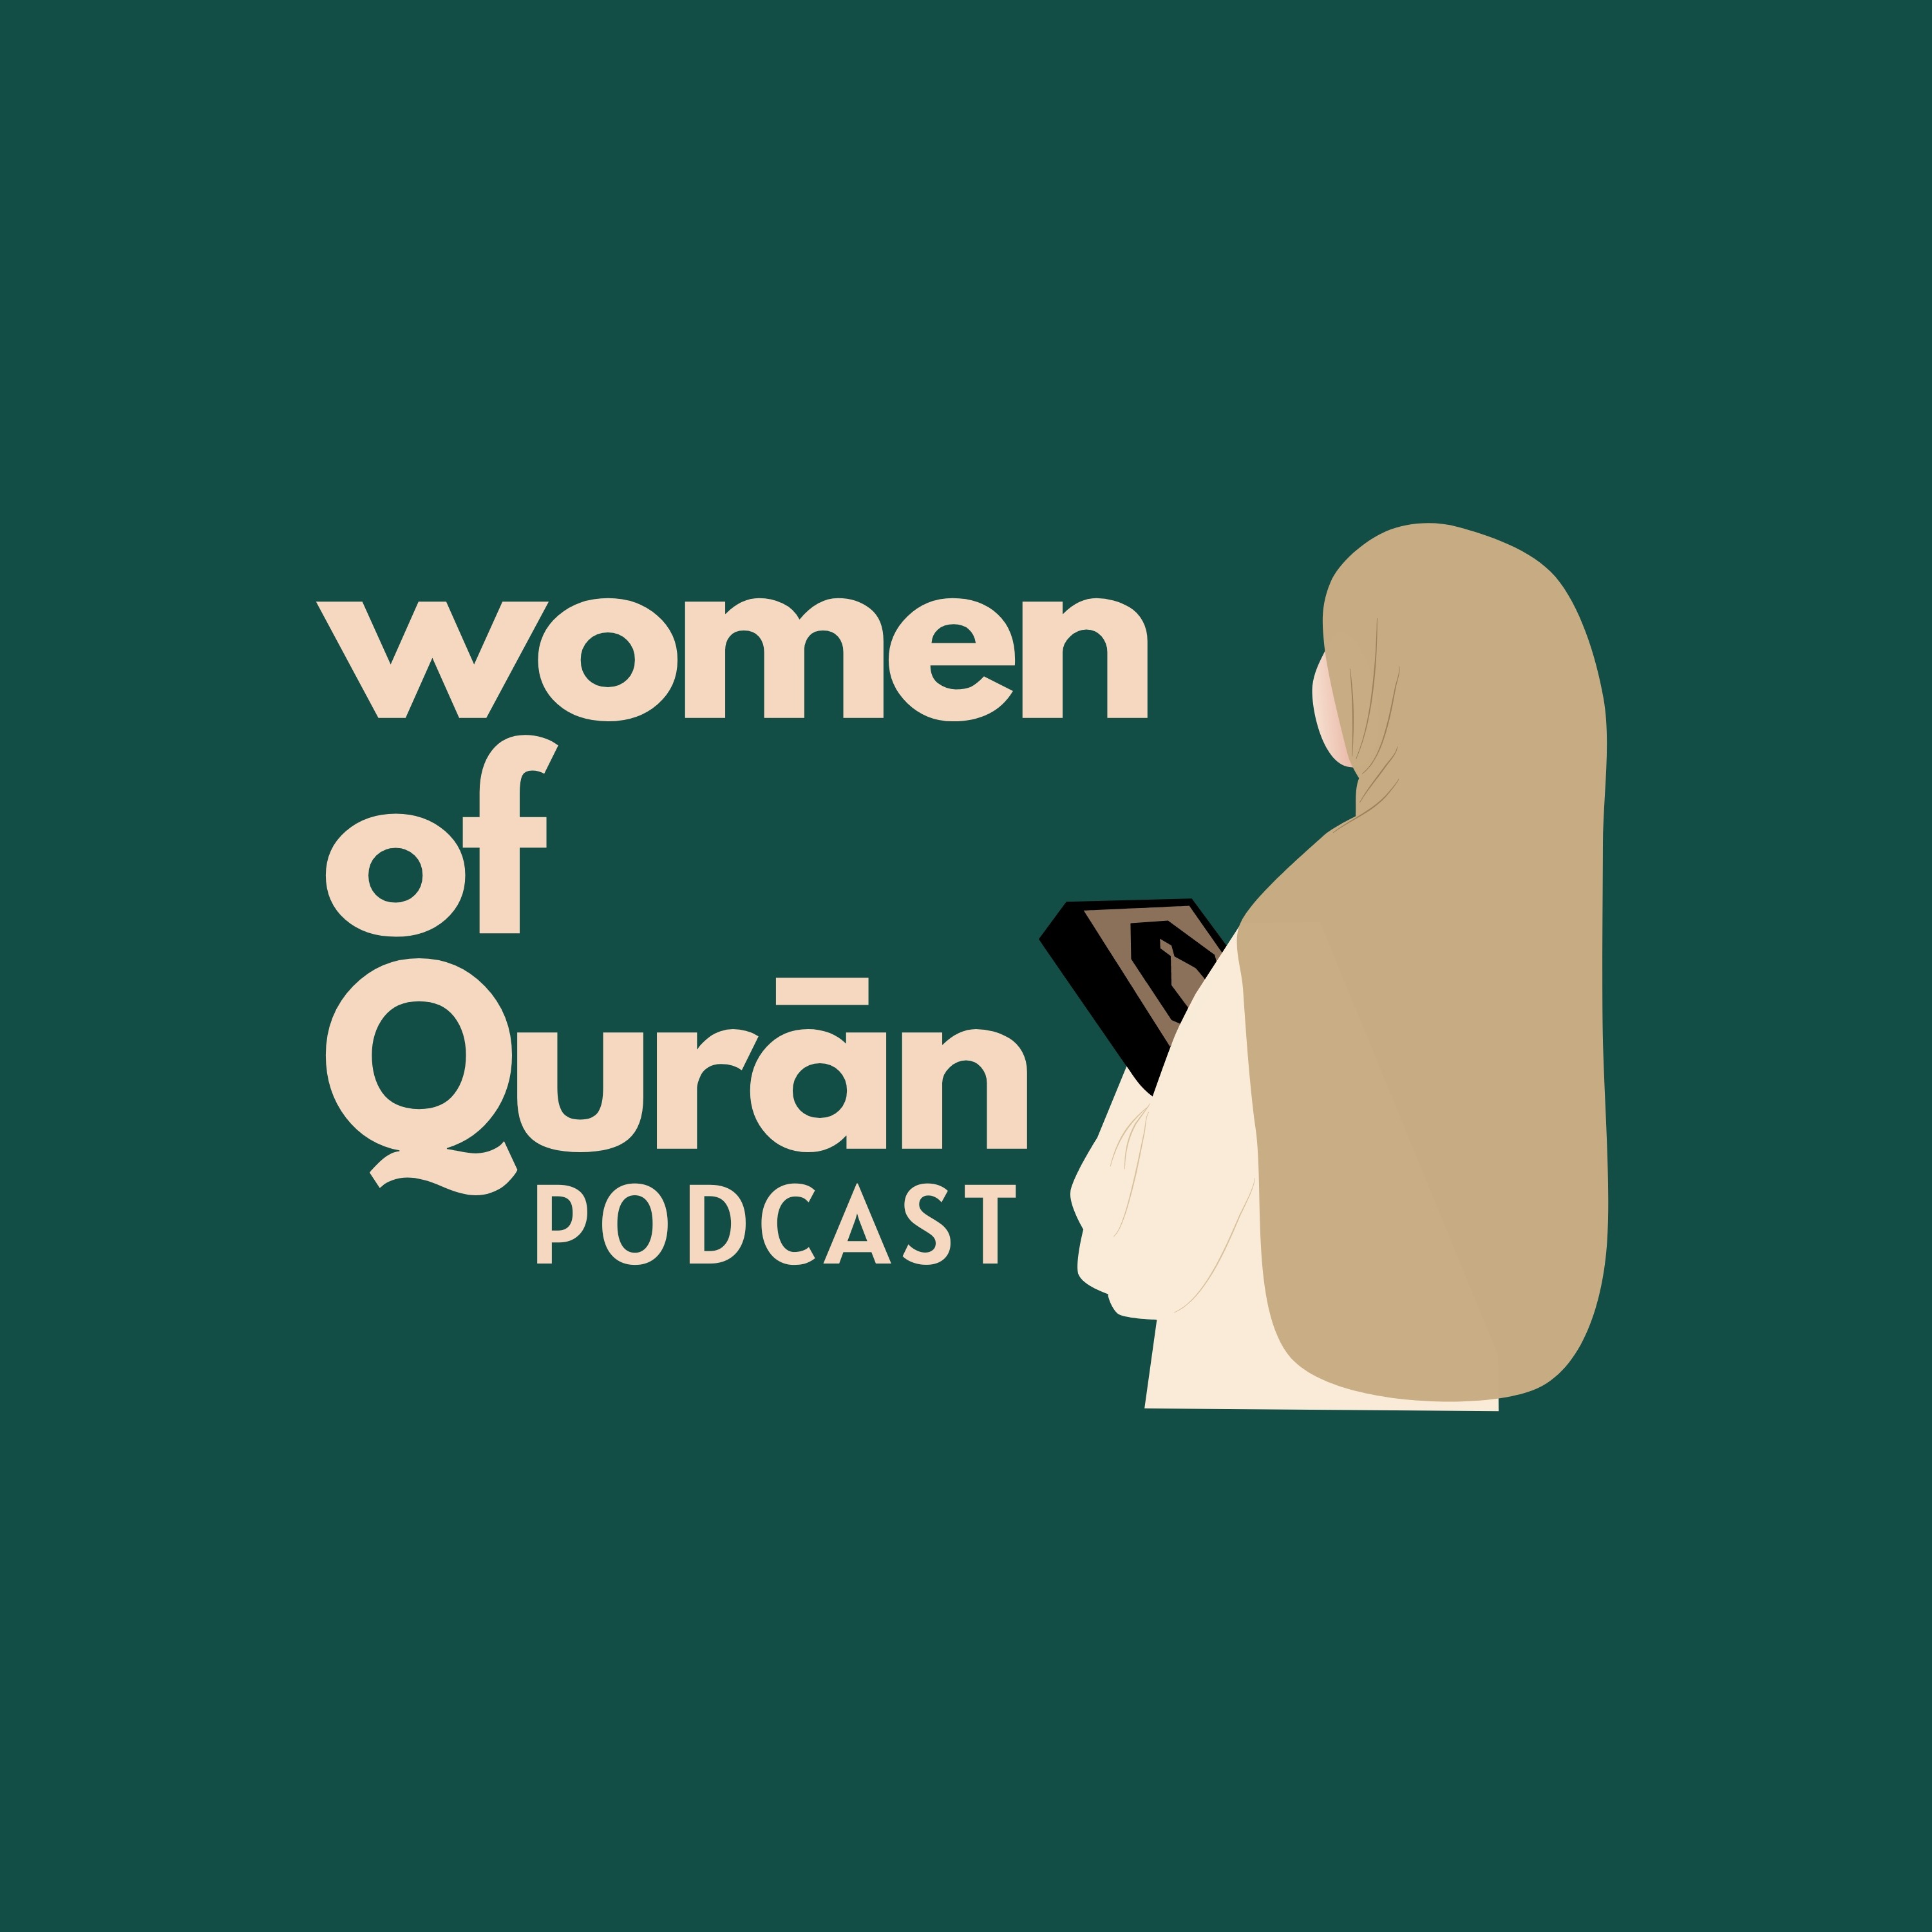 Episode 1| The Qurān mindset - A conversation with Ustadha Sarah Salih